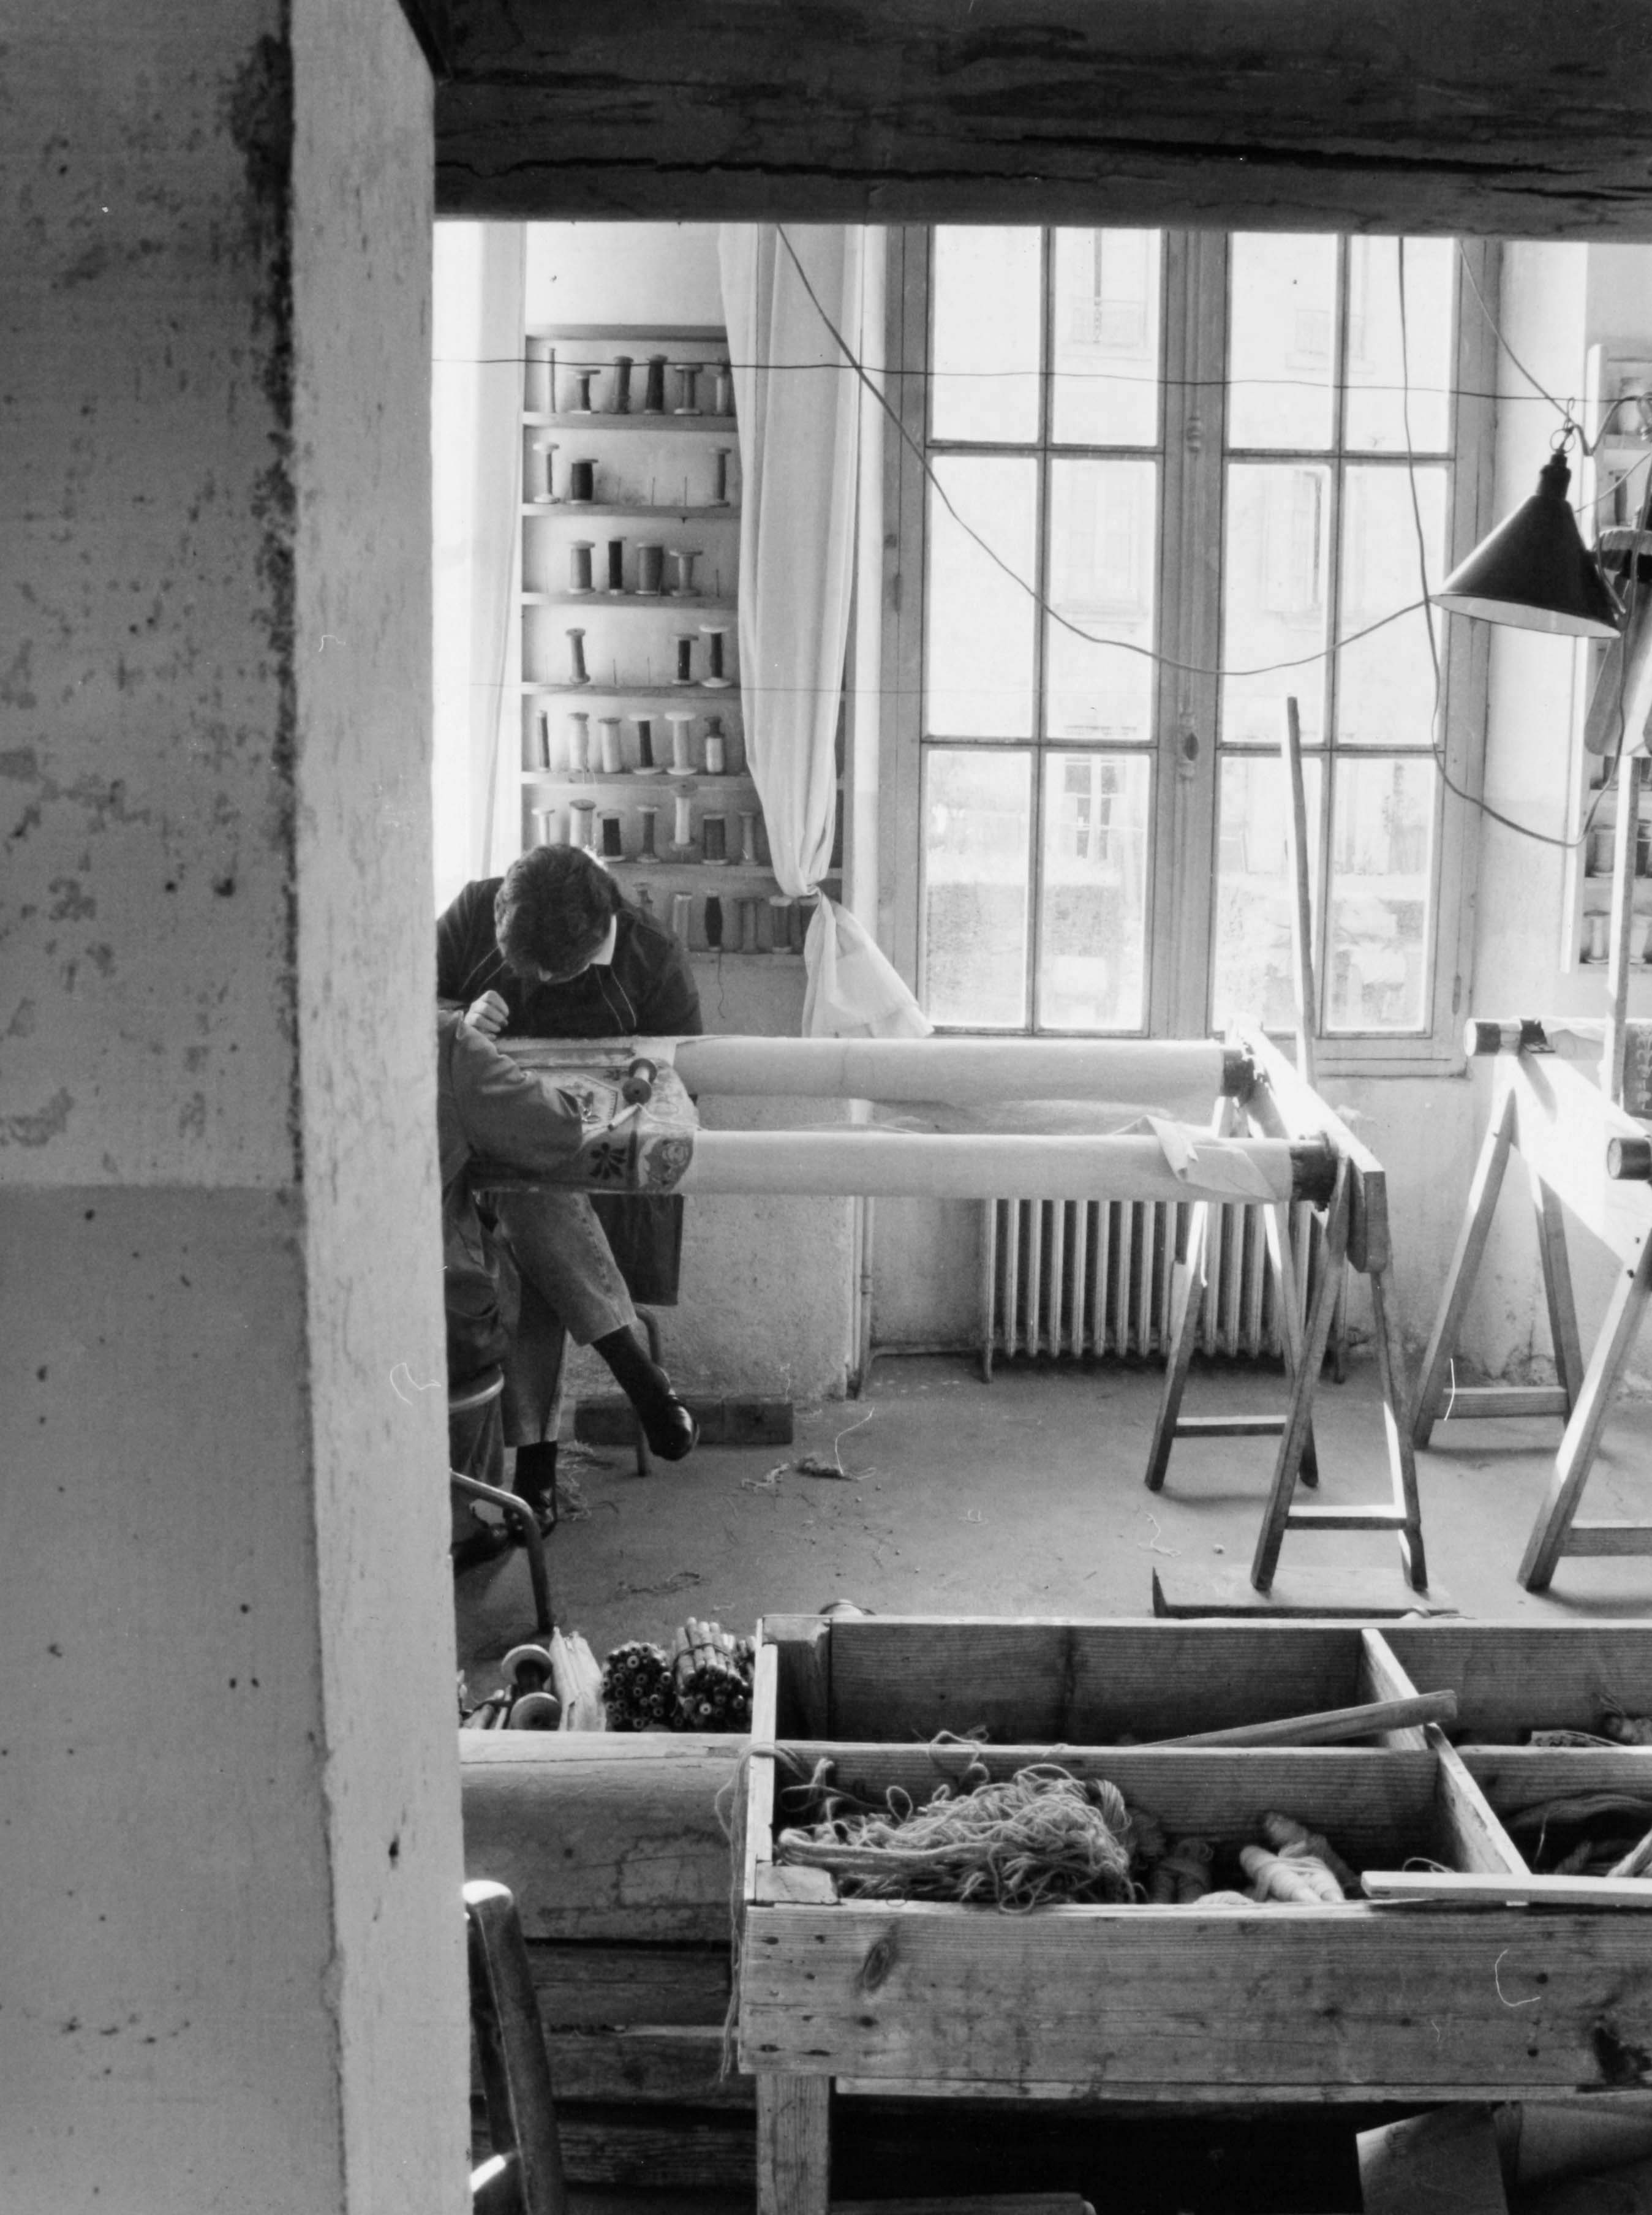 Ouvrières au travail, dans l'atelier de tissage en basse lisse (reportage photographique de L. Yeghicheyan, 1992, Aubusson, Musée départemental de la Tapisserie)